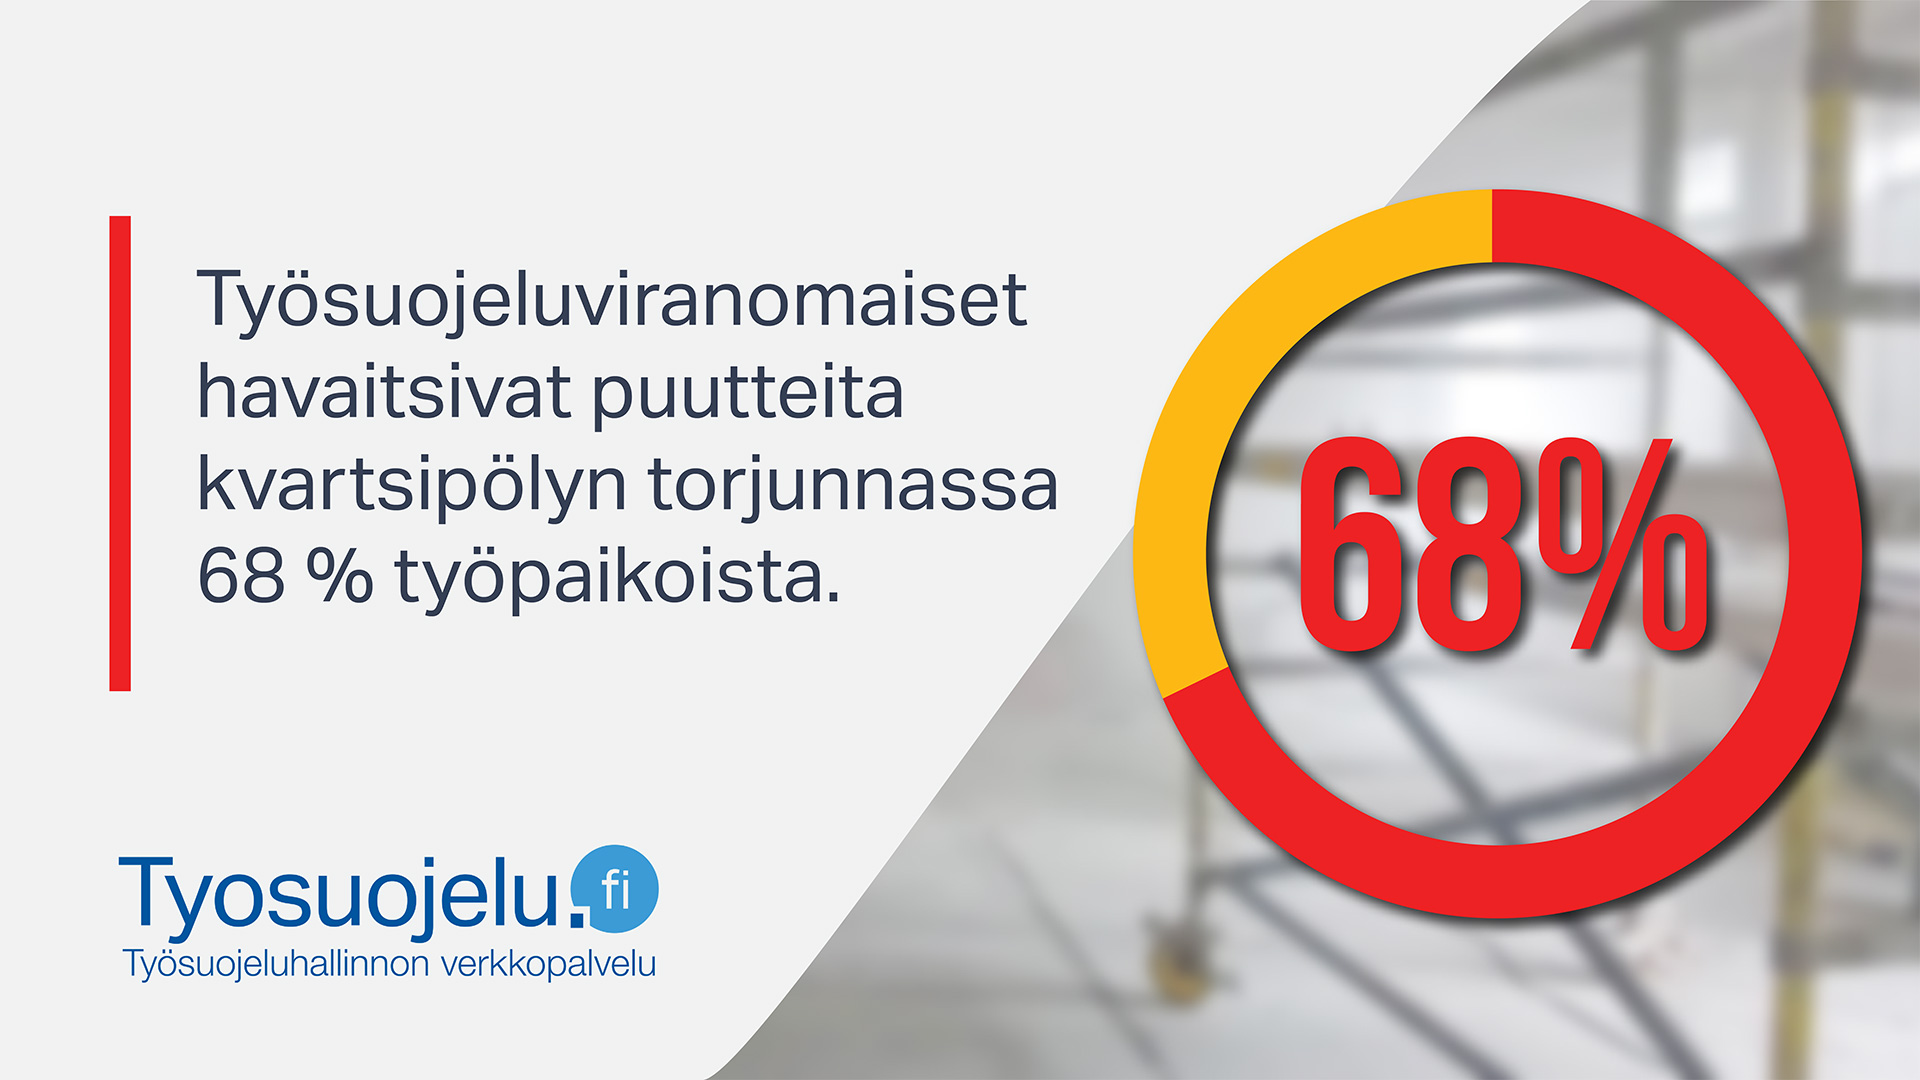 Teksti: Työsuojeluviranomaiset havaitsivat puutteita kvartsipölyn torjunnassa 68% työpaikoista. Tyosuojelu.fi-logo.